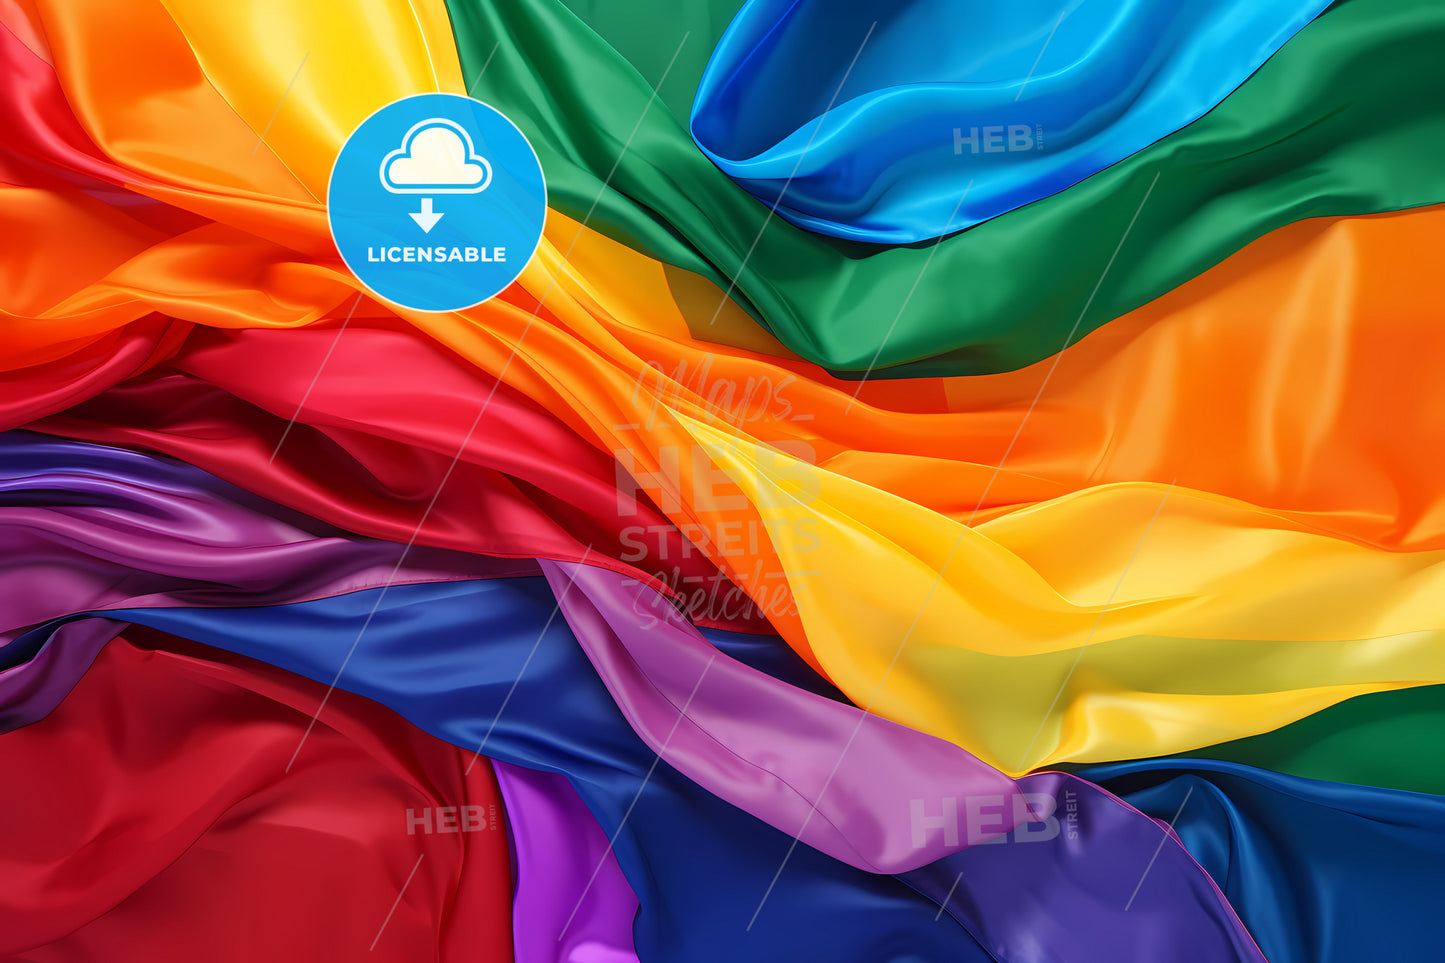 An Image Of A Rainbow Flag, A Rainbow Colored Fabric